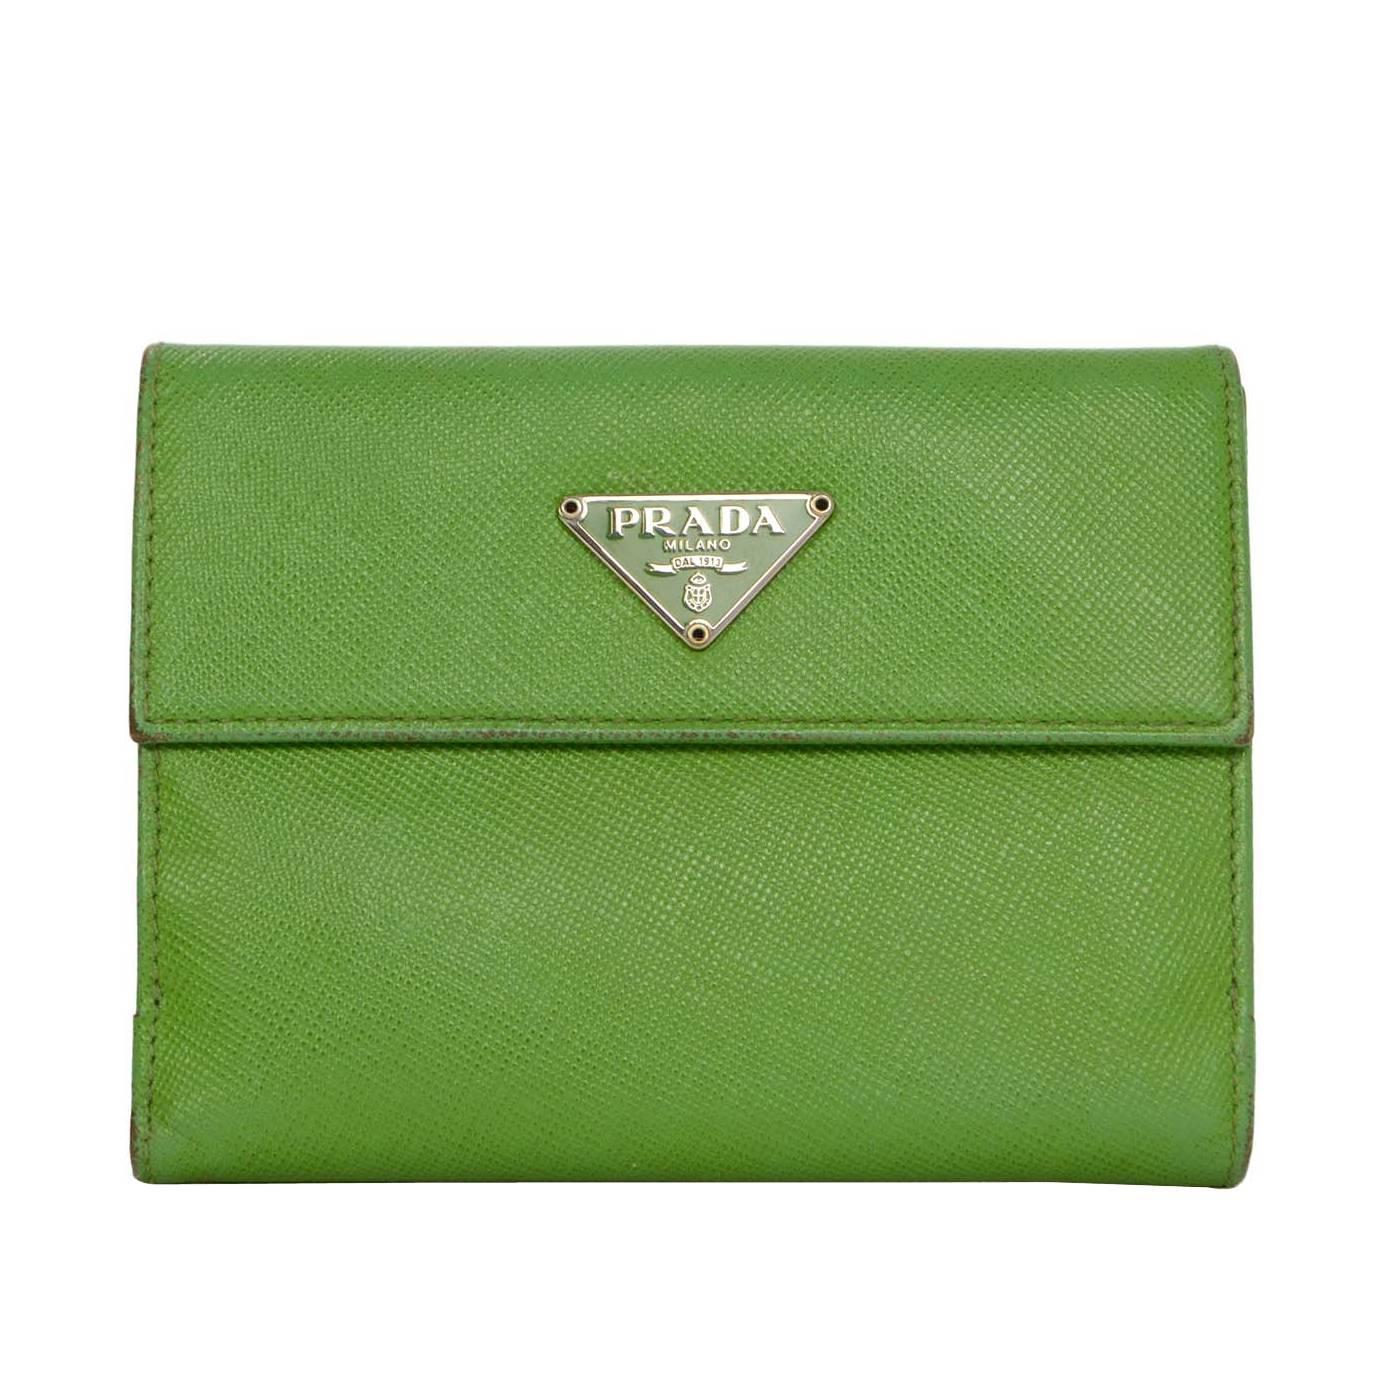 Prada Apple Green Saffiano Short Wallet SHW